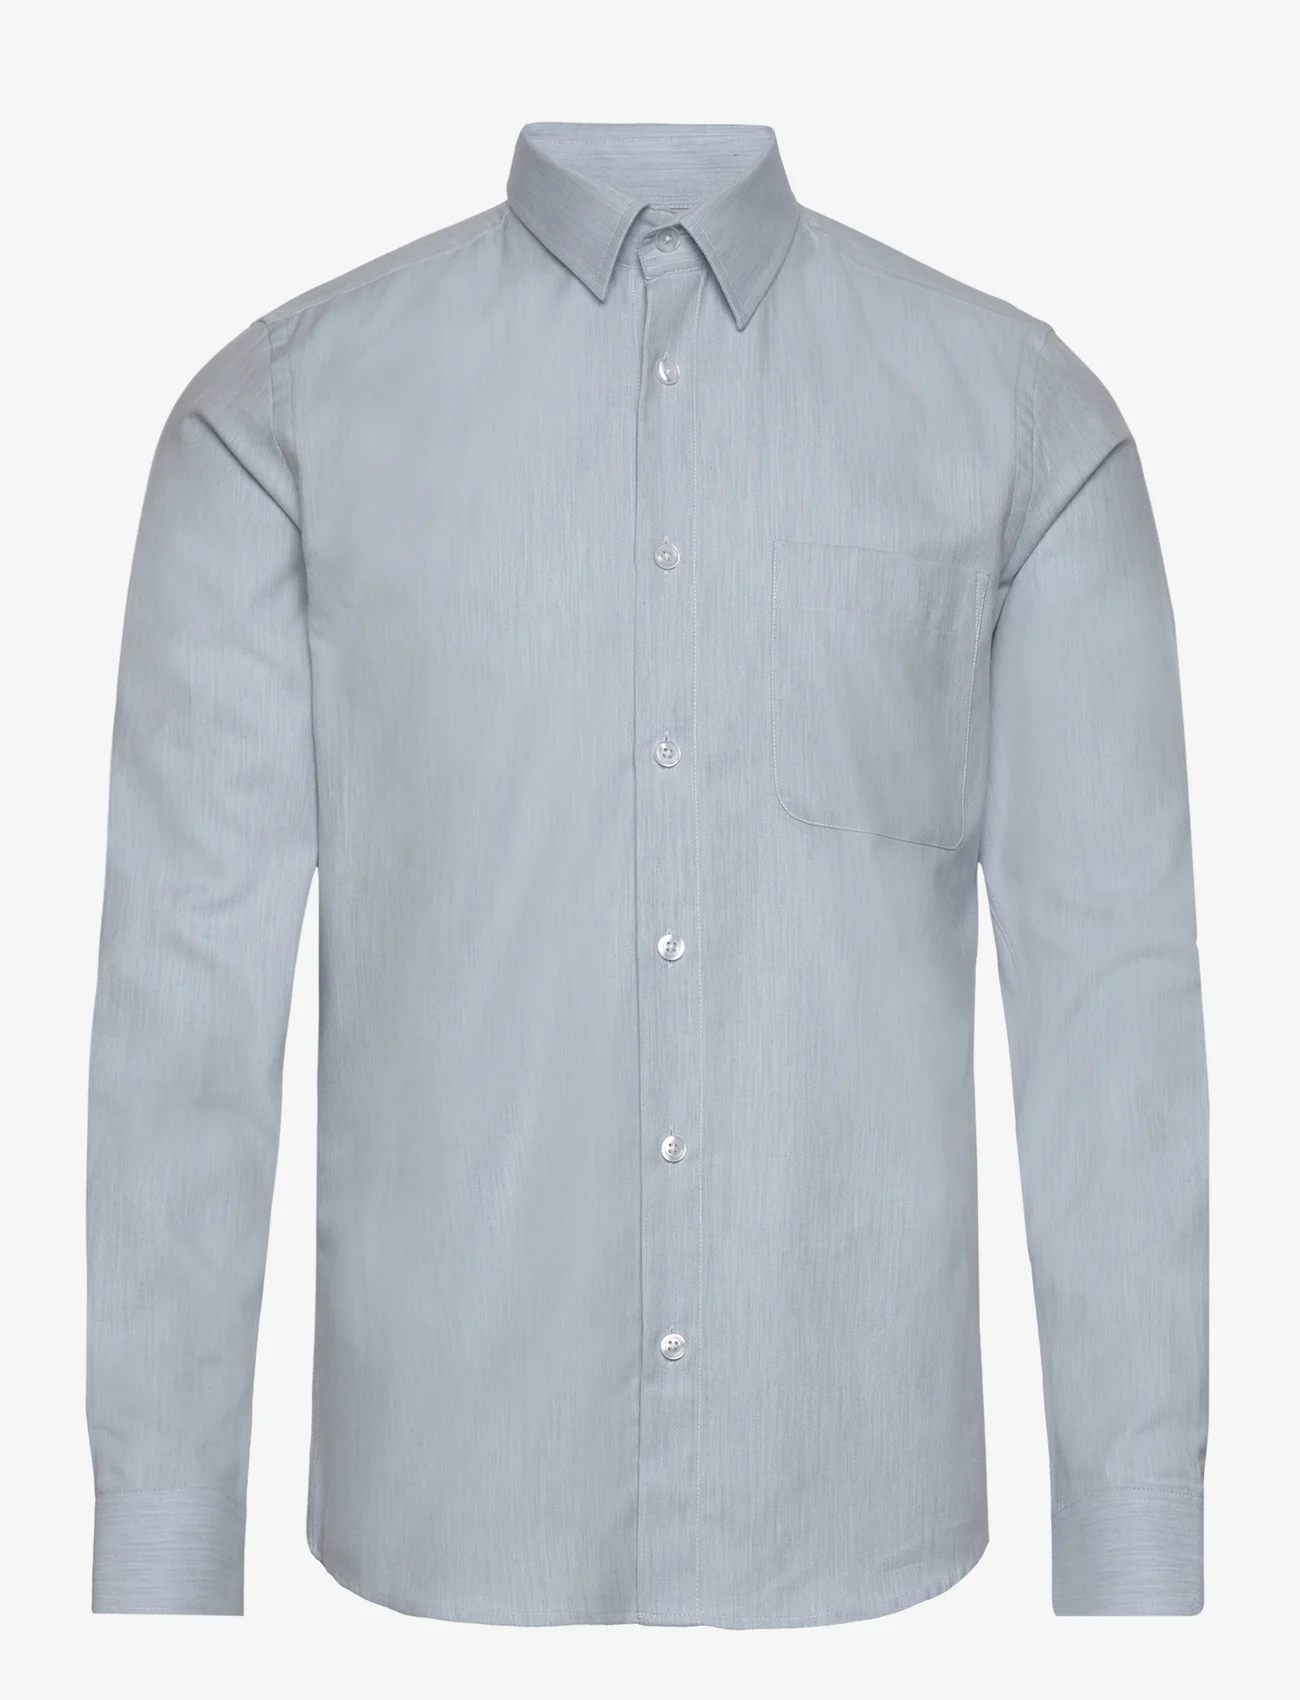 FRENN - Aapo Cotton Shirt - basic-hemden - sky blue - 0